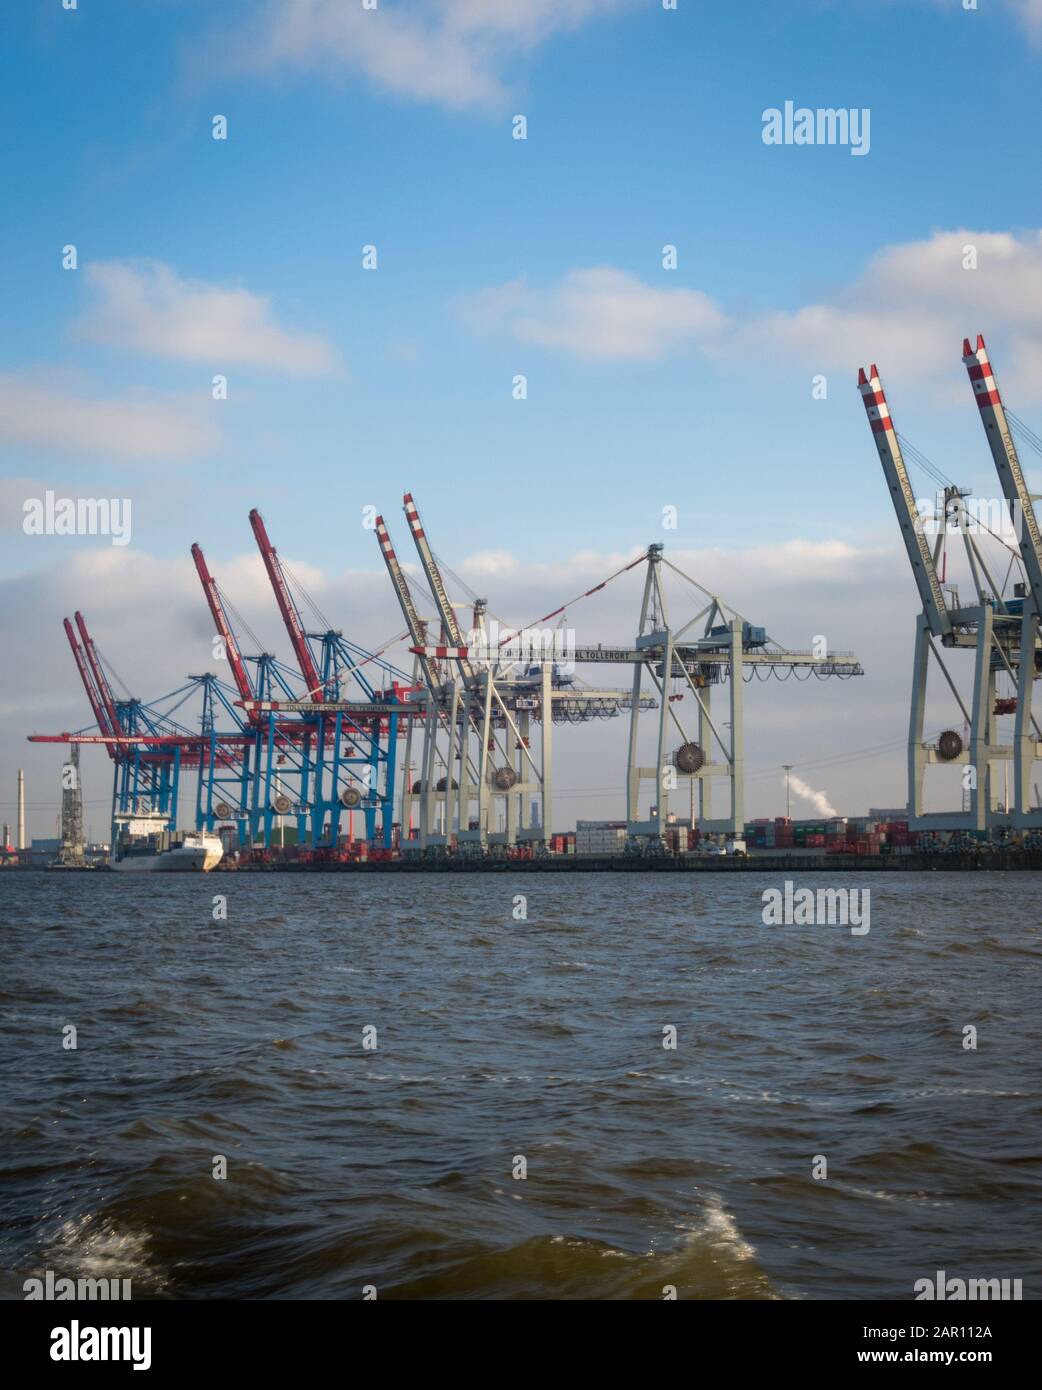 Le gru del porto di Amburgo attraccano i container delle navi da carico nelle giornate di sole. Nessuna gente visibile, fiume Elba di fronte. CopySpace disponibile Foto Stock